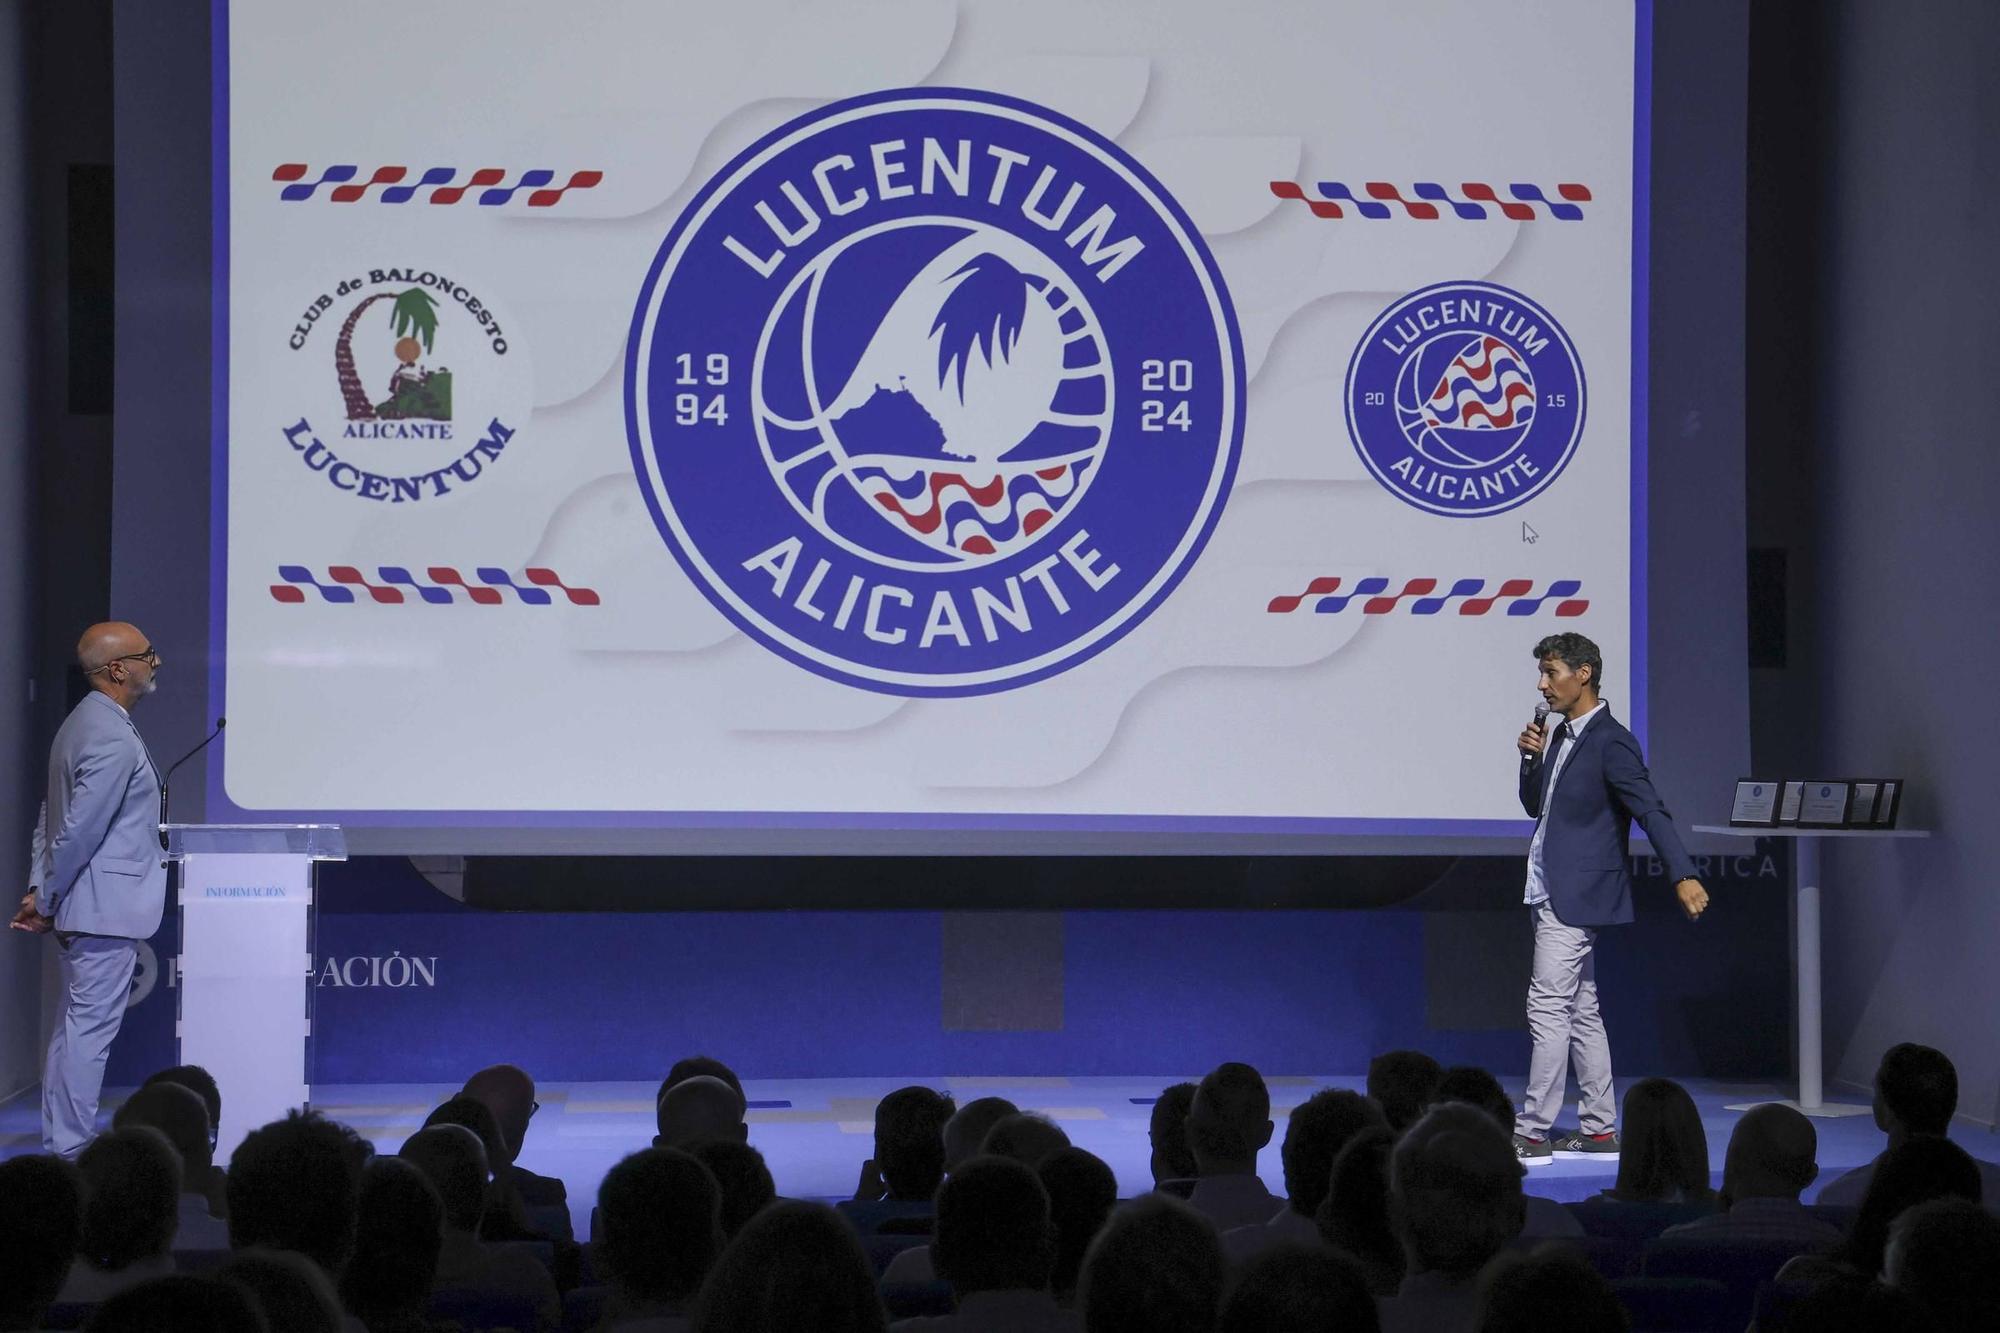 Así ha sido la celebración del 30 aniversario del Lucentum (HLA Alicante) en el Club Información